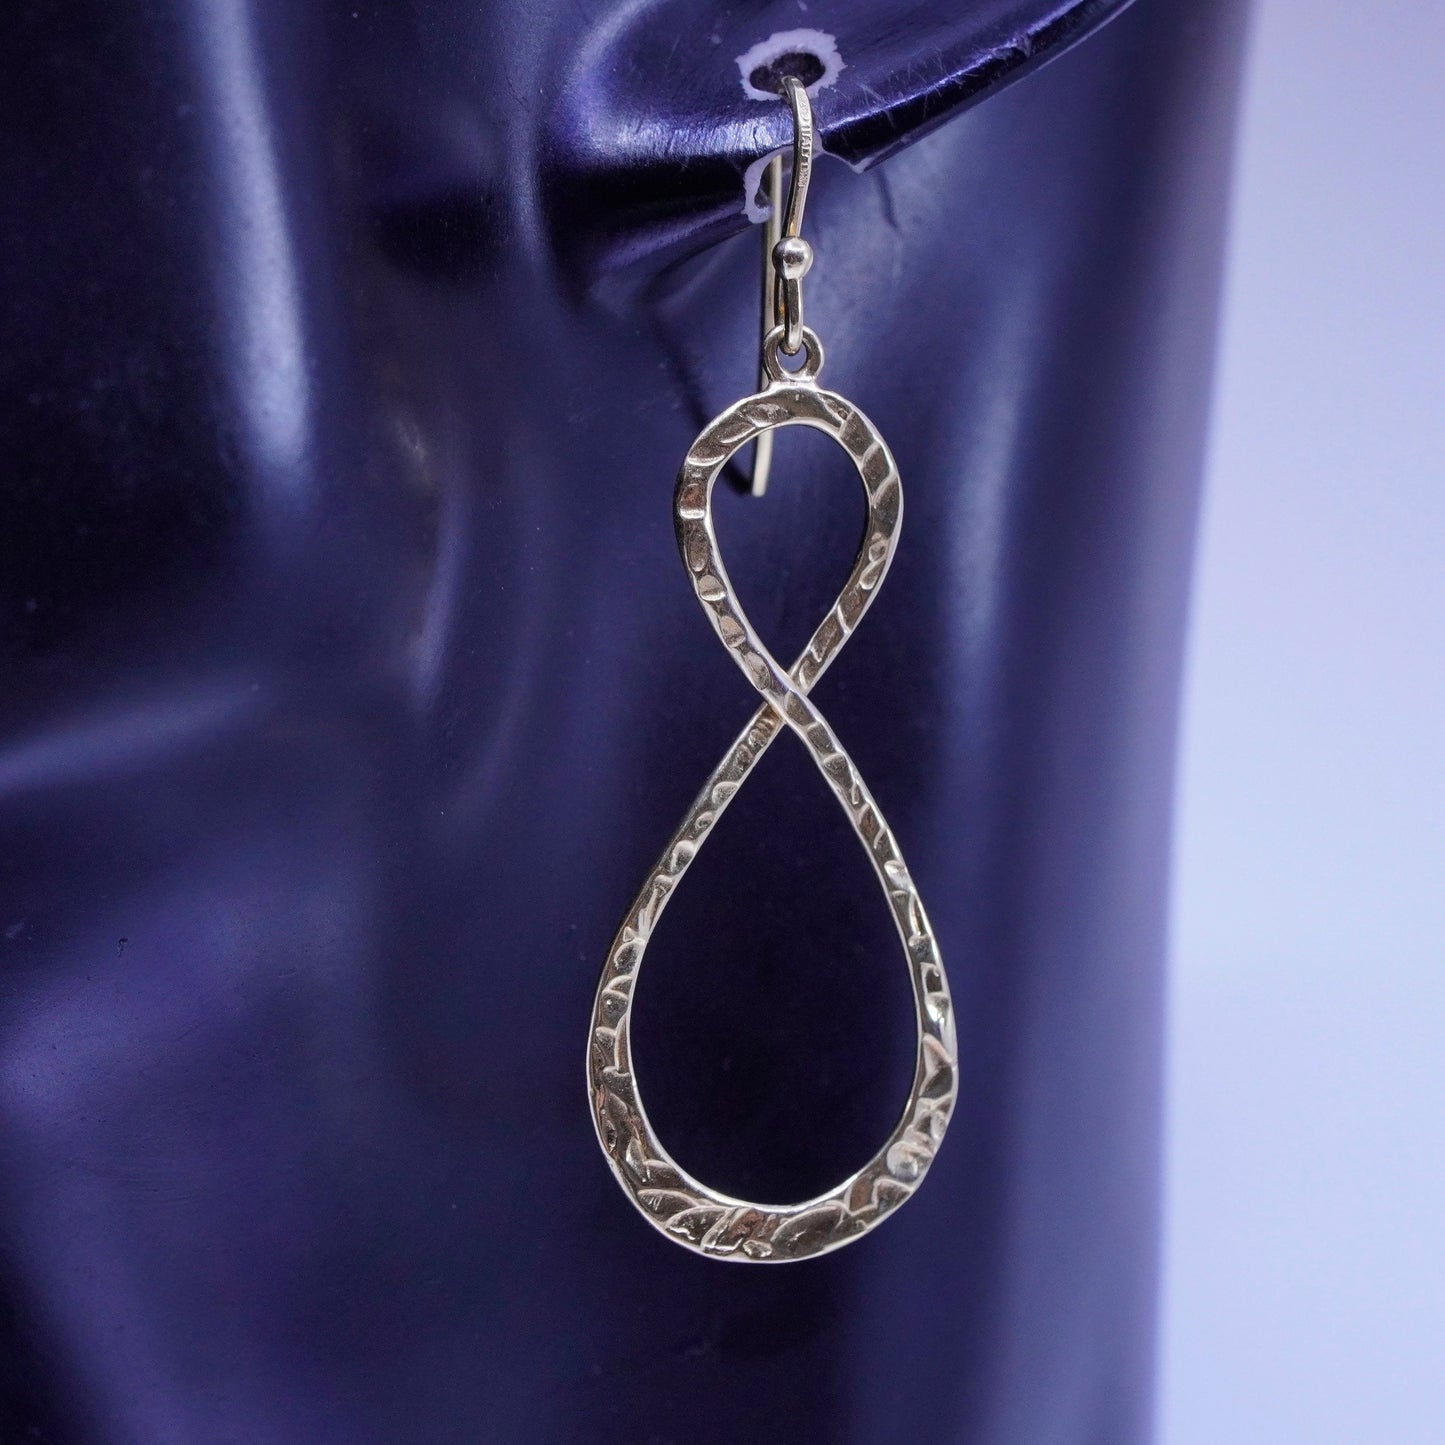 Lirm vermeil gold filled Sterling 925 silver infinity endless loop earrings